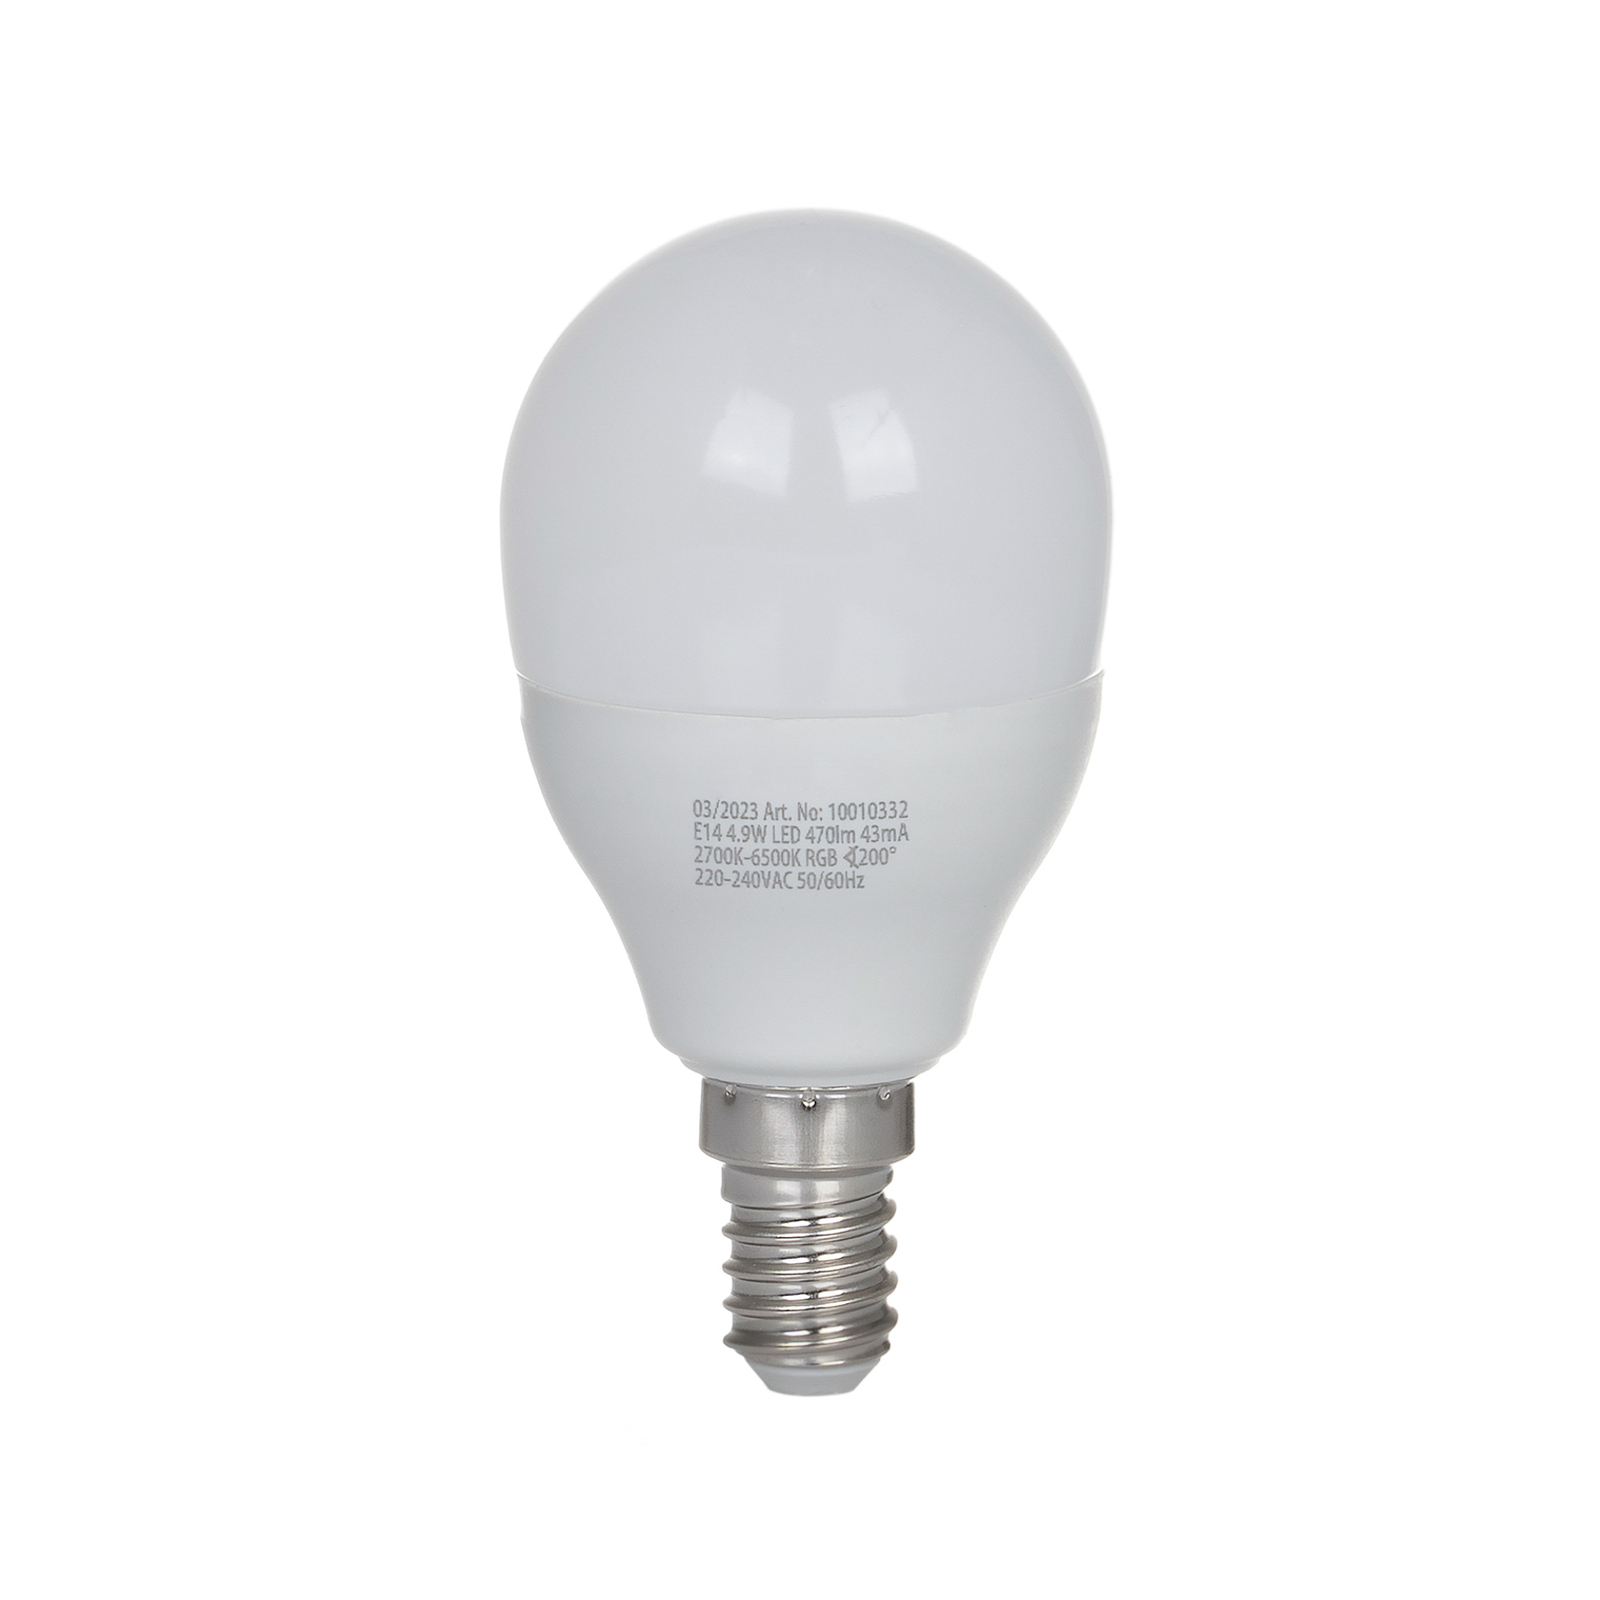 LUUMR Ampoule goutte LED Smart, E14, 4,9W, CCT, RVB, Tuya, 2 pièces